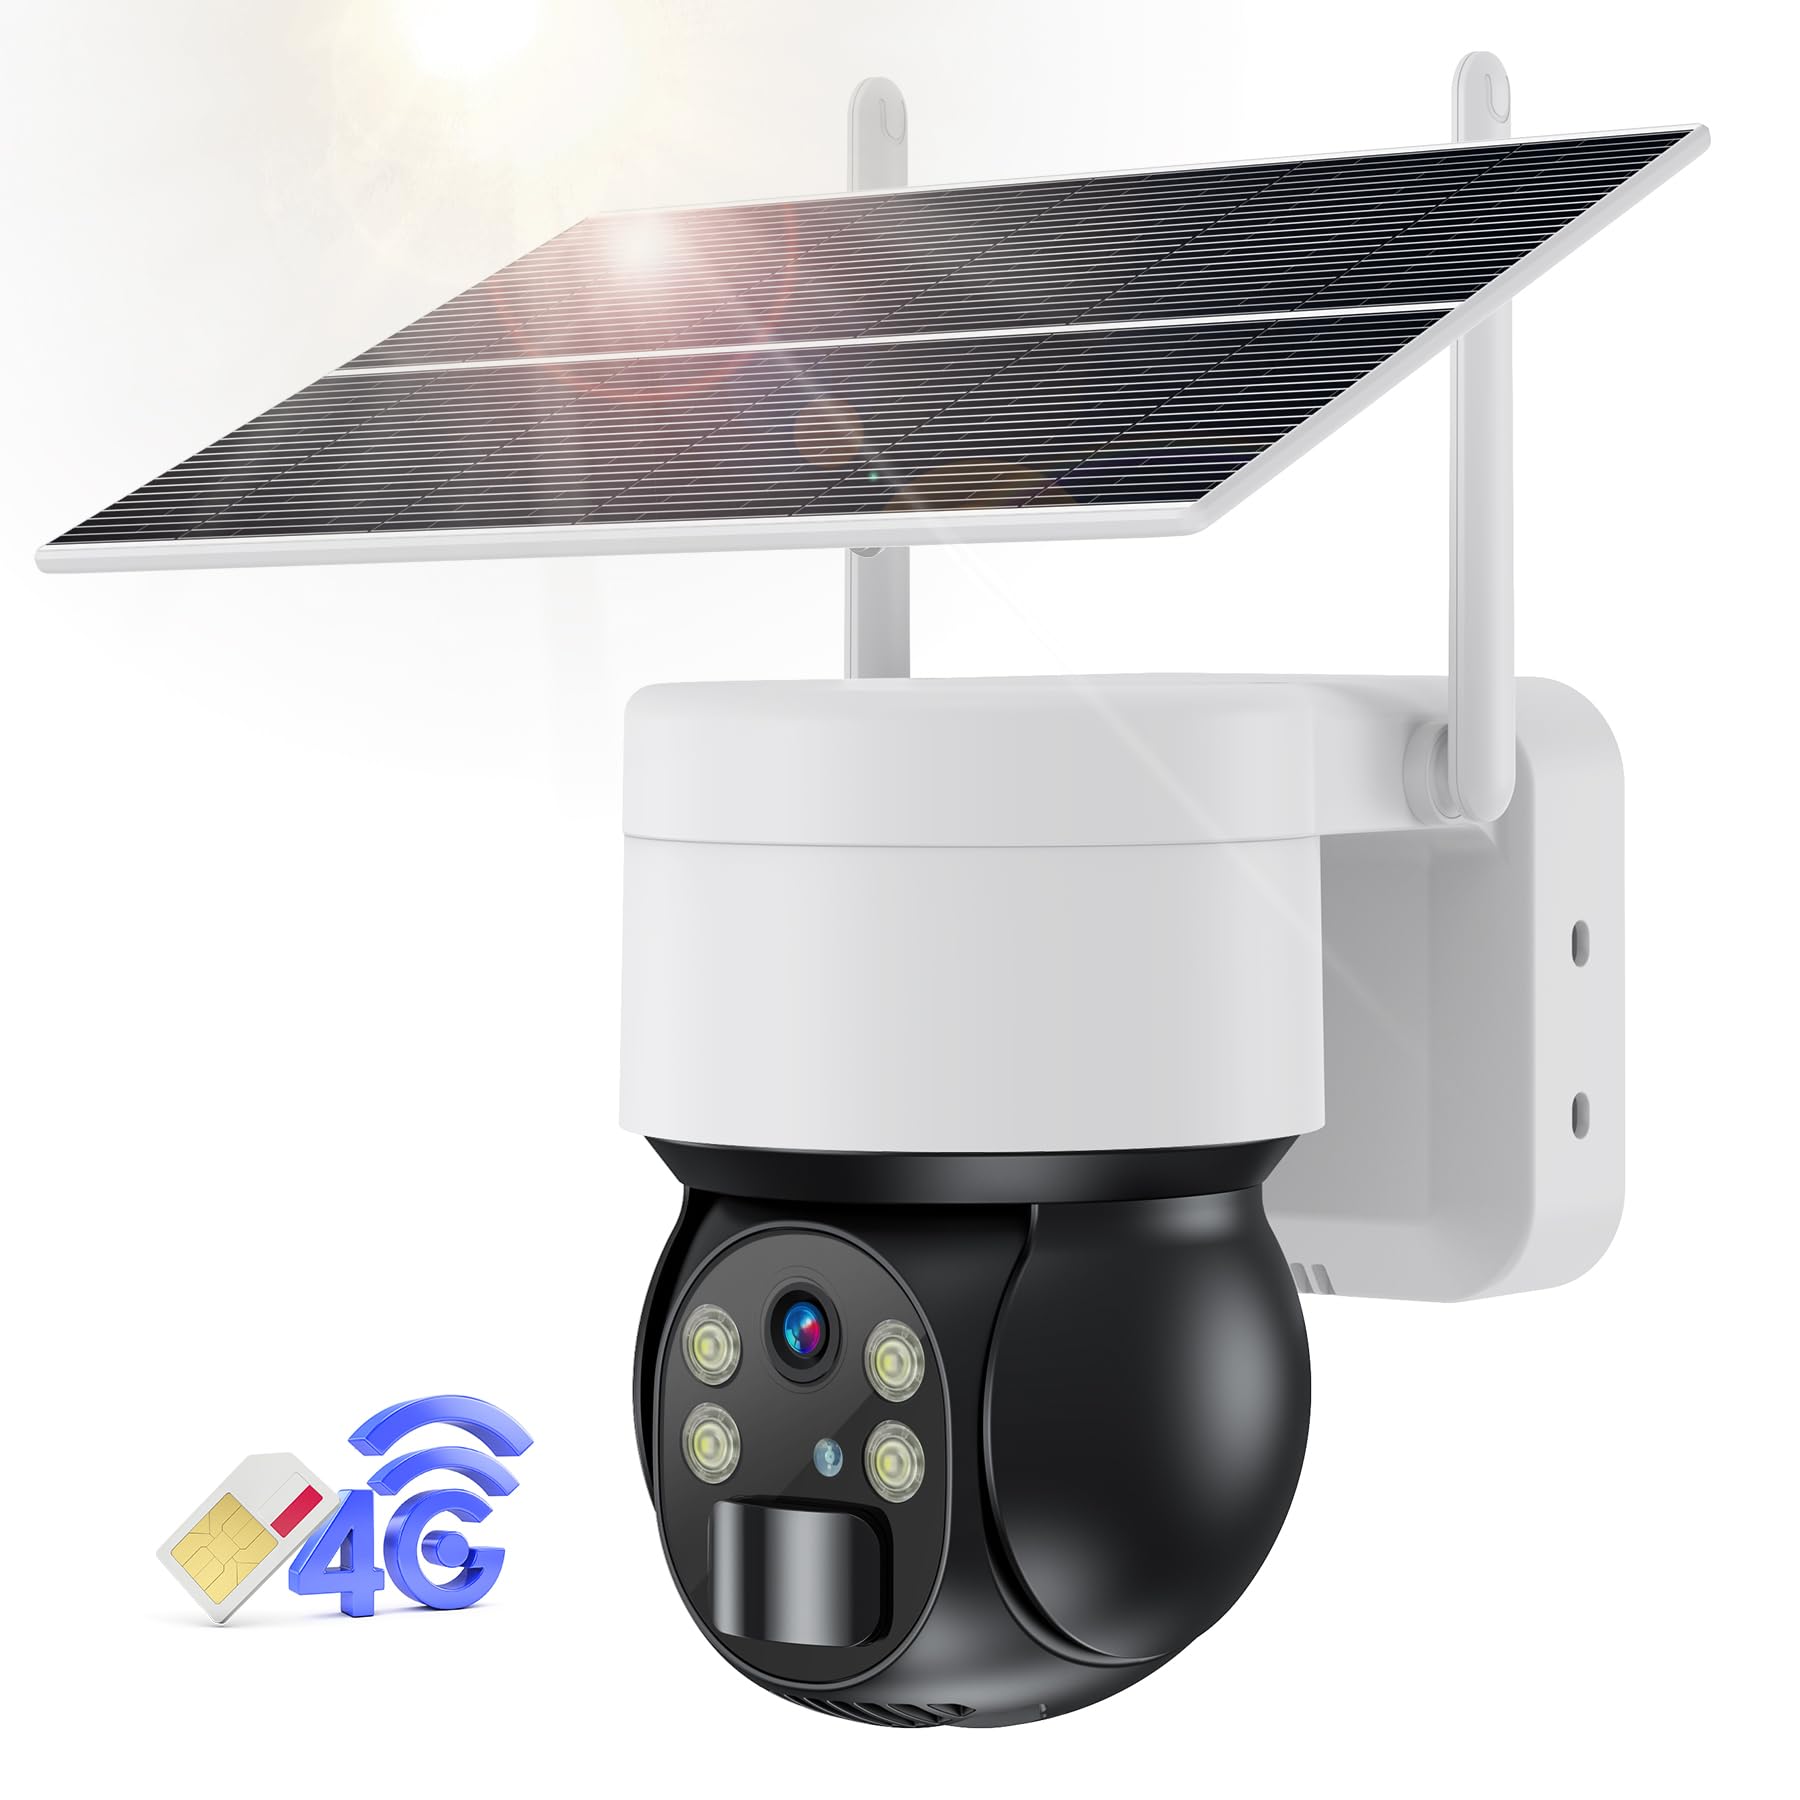 Ankway 4G LTE Überwachungskamera Aussen mit SIM Karte, 3G Kabellos Überwachungskamera Solar mit Farbnachtsicht, PIR-Personenerkennung, Sirene/Weißlichtalarm, 355°/90° Pan Tilt, 2-Wege-Audio, IP66